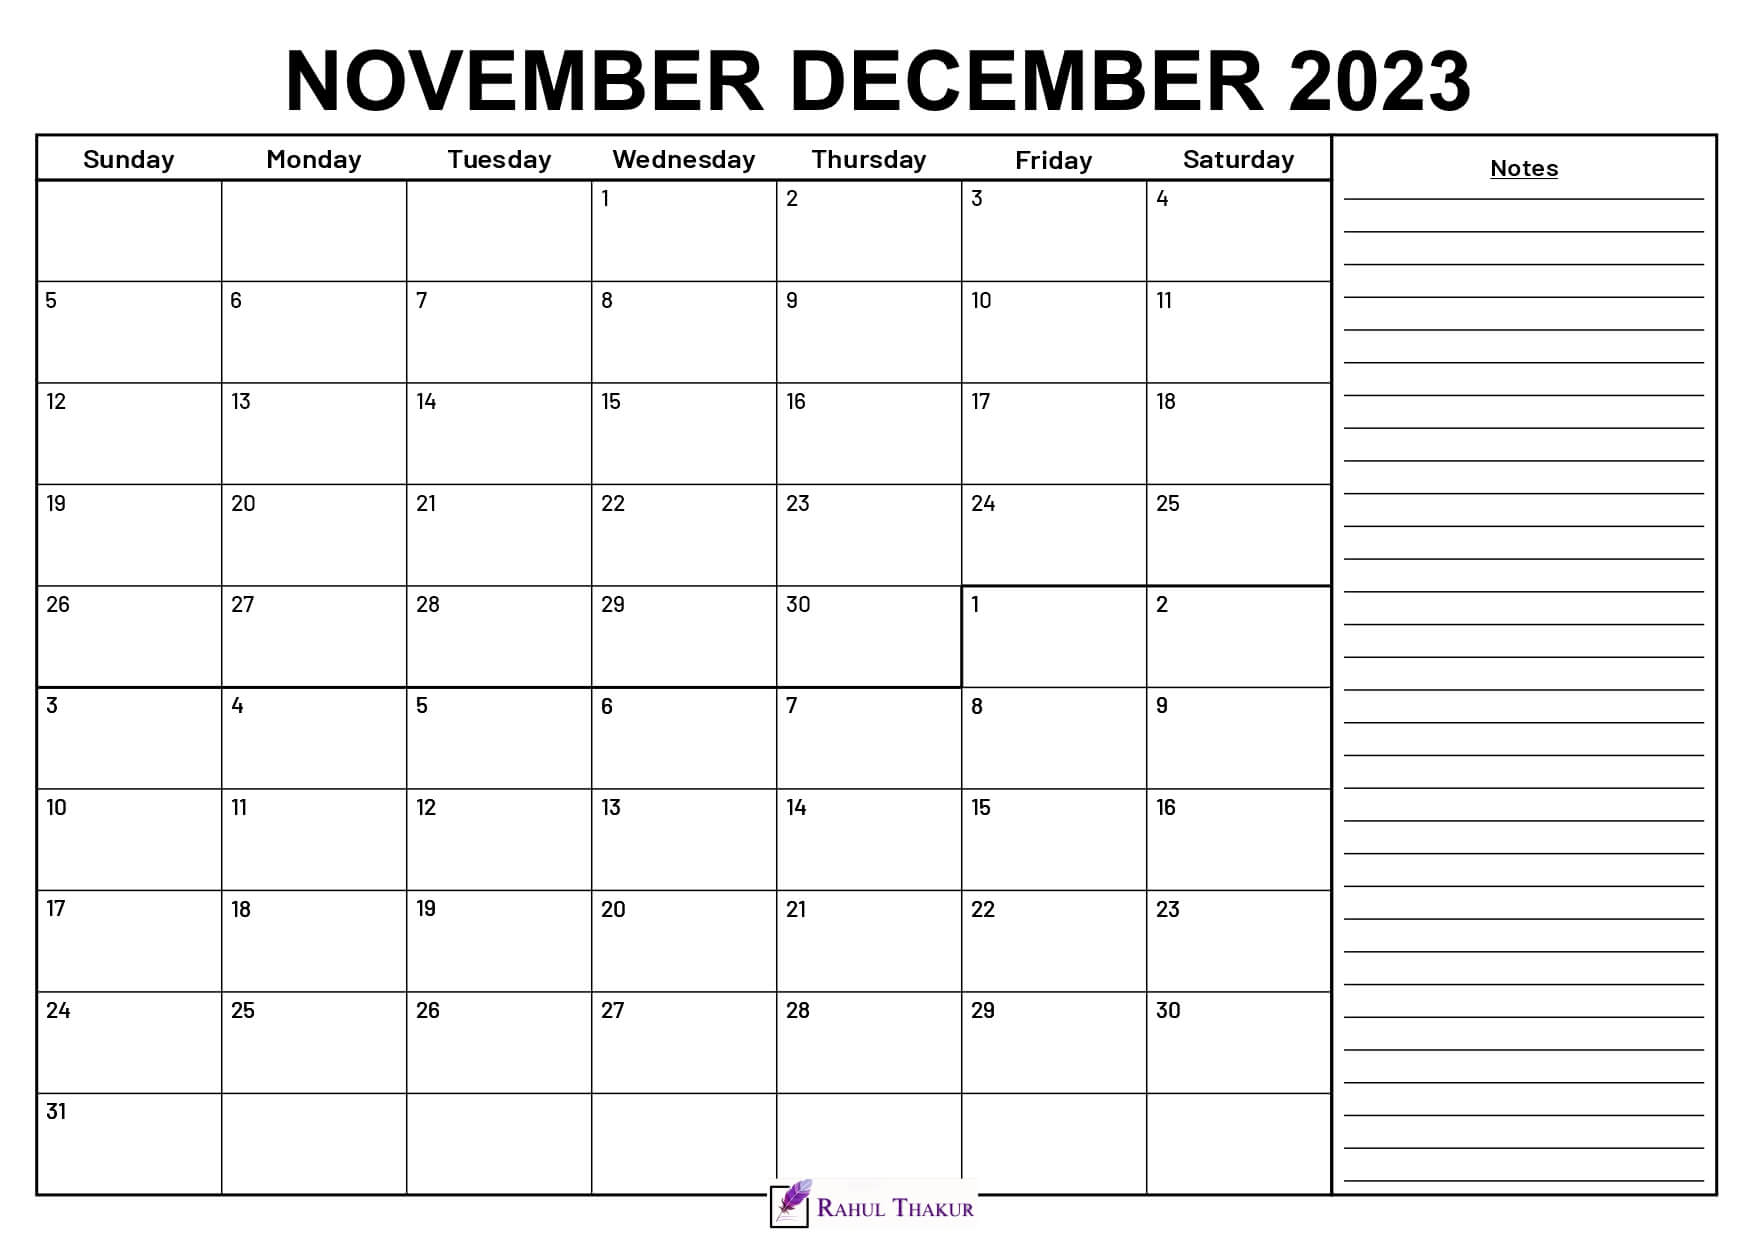 November December 2023 Calendar With Notes